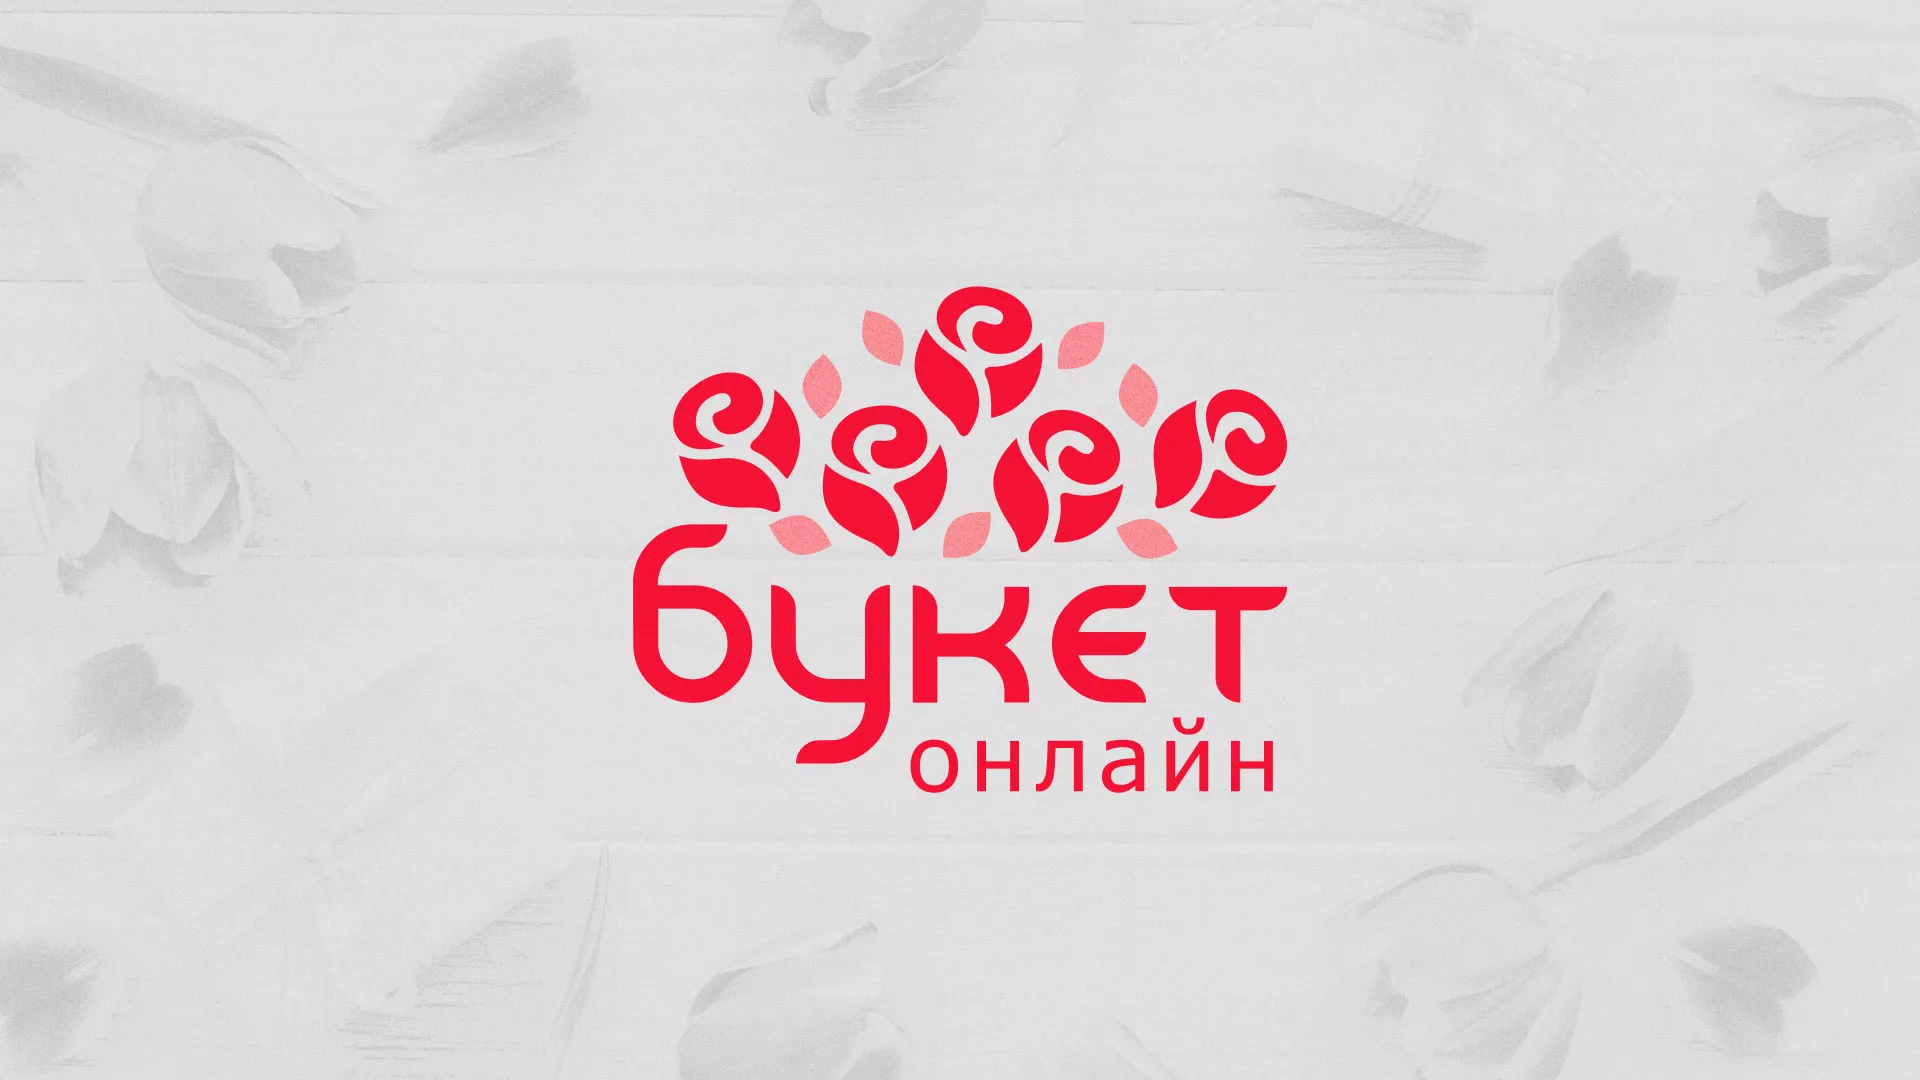 Создание интернет-магазина «Букет-онлайн» по цветам в Людиново